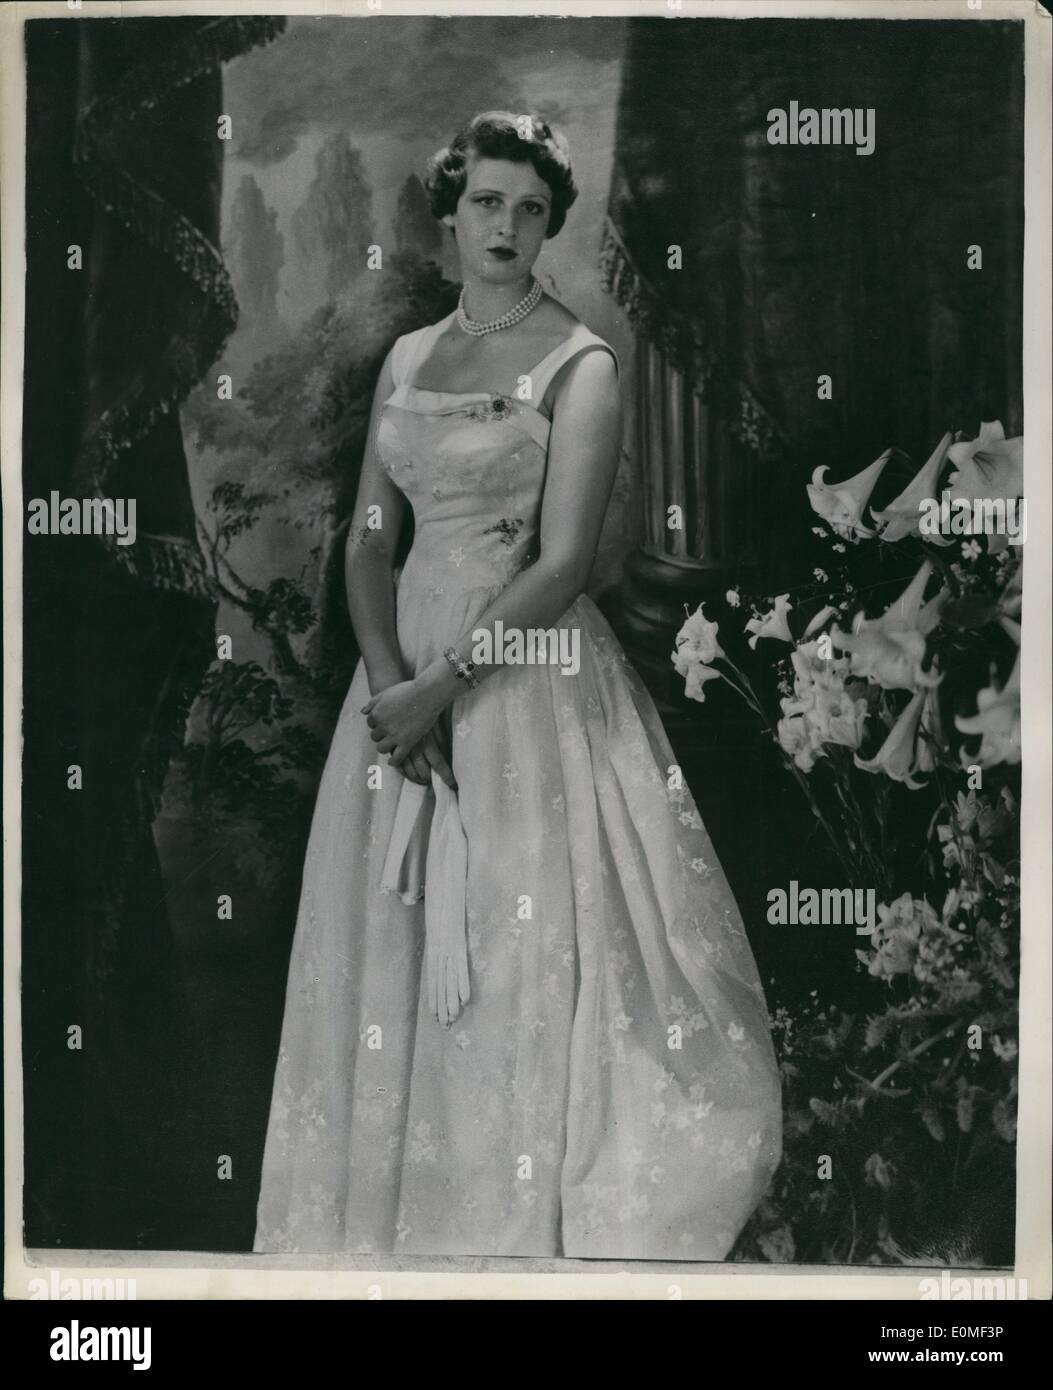 Il 12 Dic. 1954 - la Principessa Alexandra: Questo inediti fotografia di Cecil Beaton, è servito in occasione del xviii compleanno, Dicembre 25th. di S.A.R. La principessa Alexandra, la figlia della duchessa di Kent. La Principessa indossa un bianco di mussola ricamata abito da sera. Foto Stock